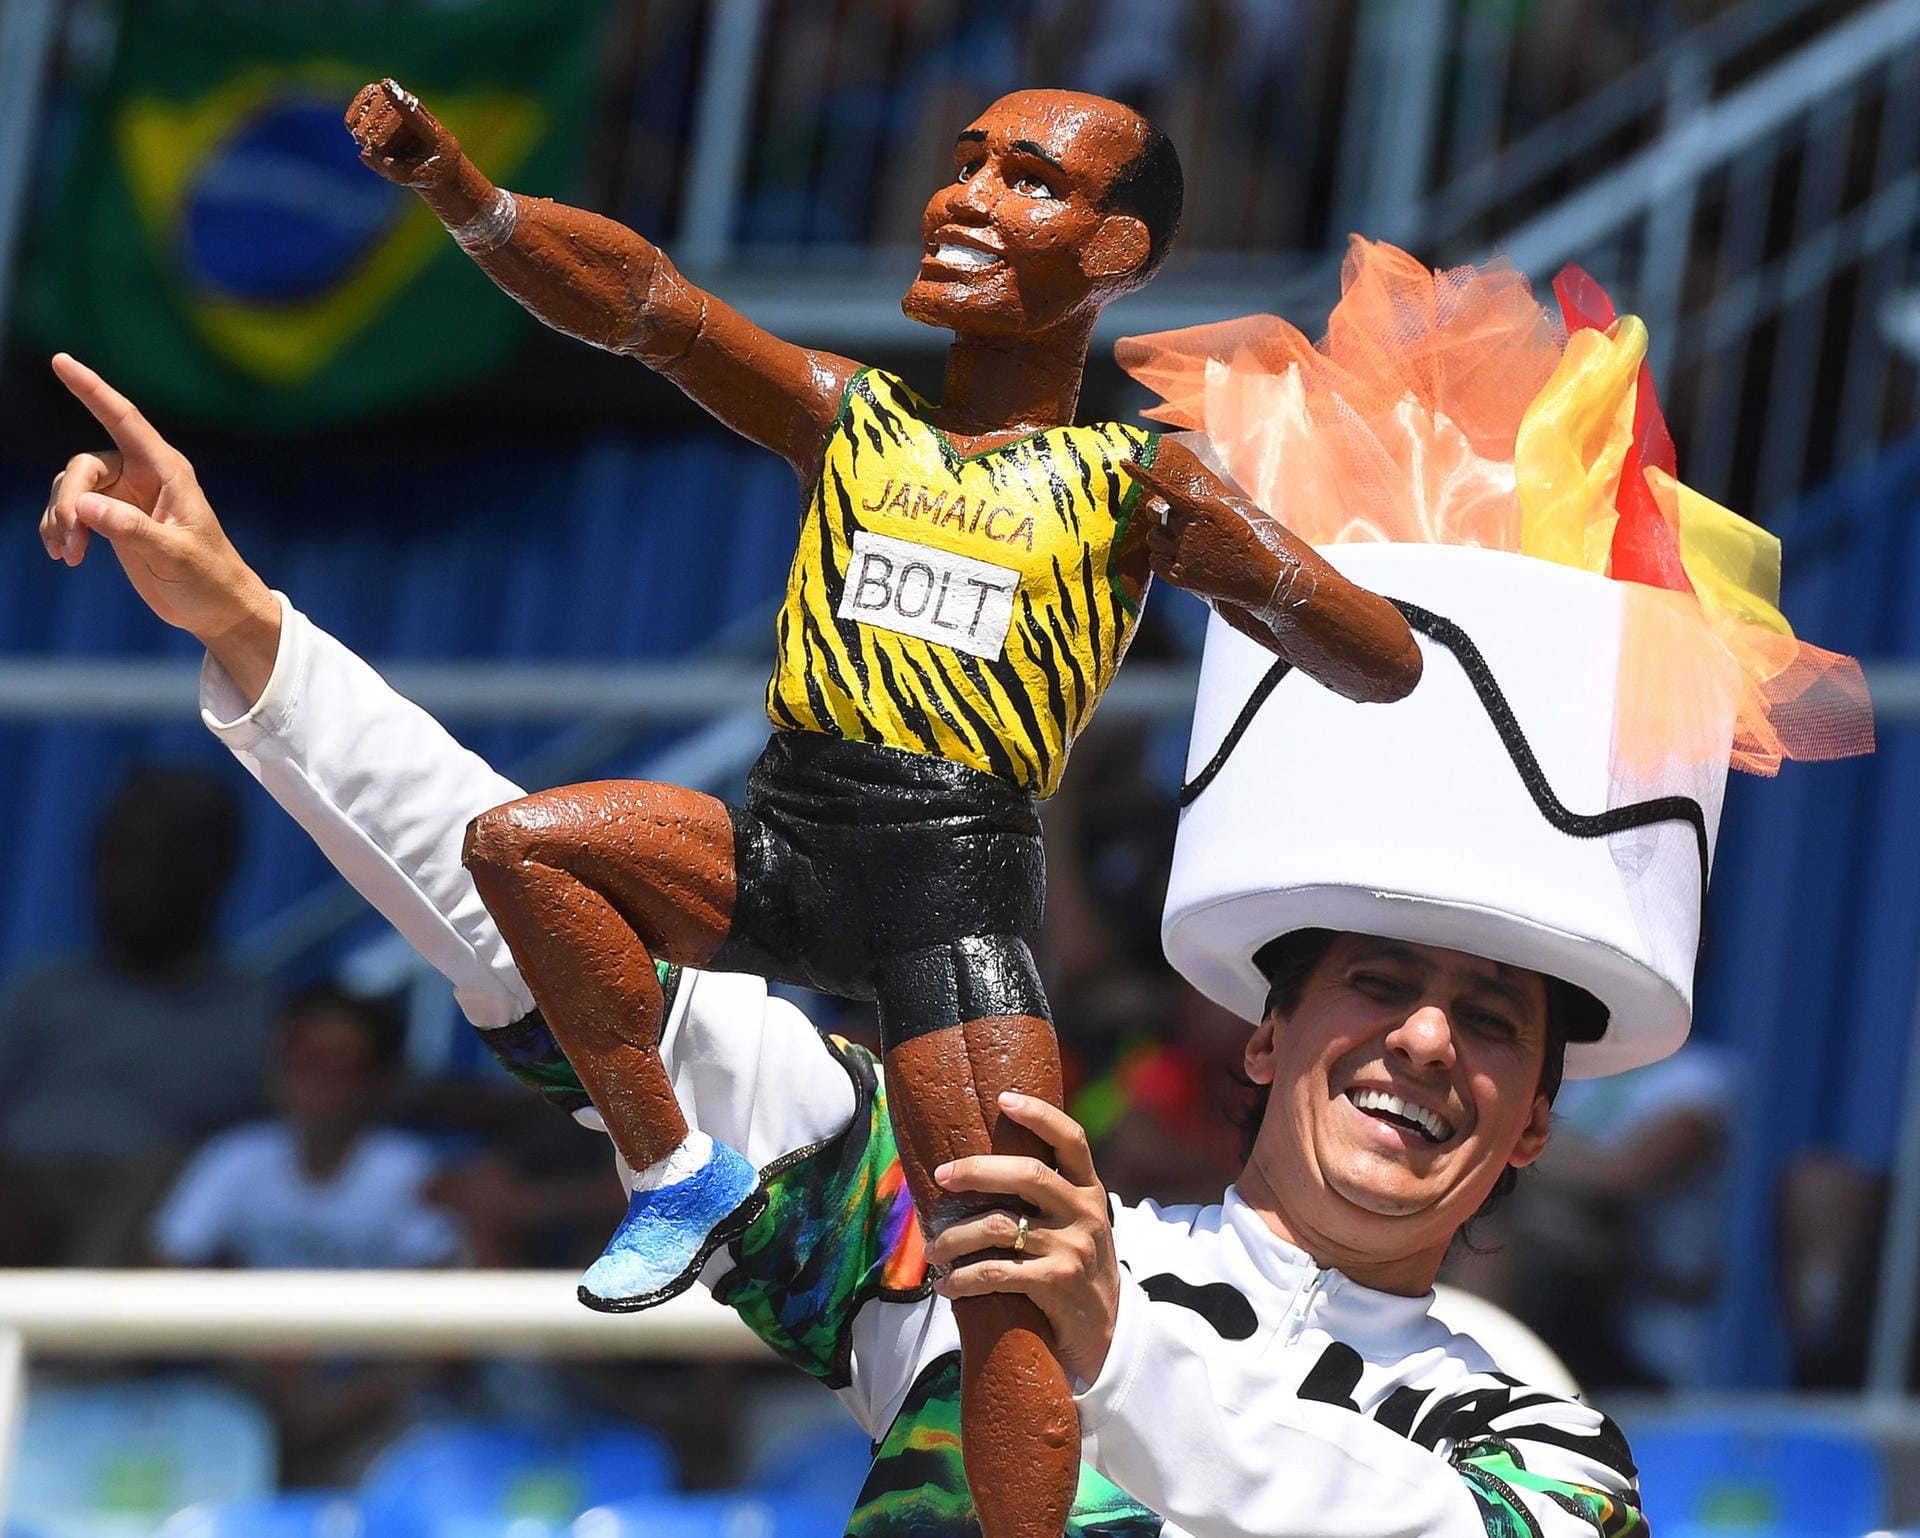 Der Name "Bolt" zieht die Massen an. Während gestern Abend viele Plätze im Olympiastadion leerblieben, war die Arena beim 100 Meter-Finale ausverkauft. Auch dieser Fan scheint ein großer Sympathisant des Jamaikaners zu sein.